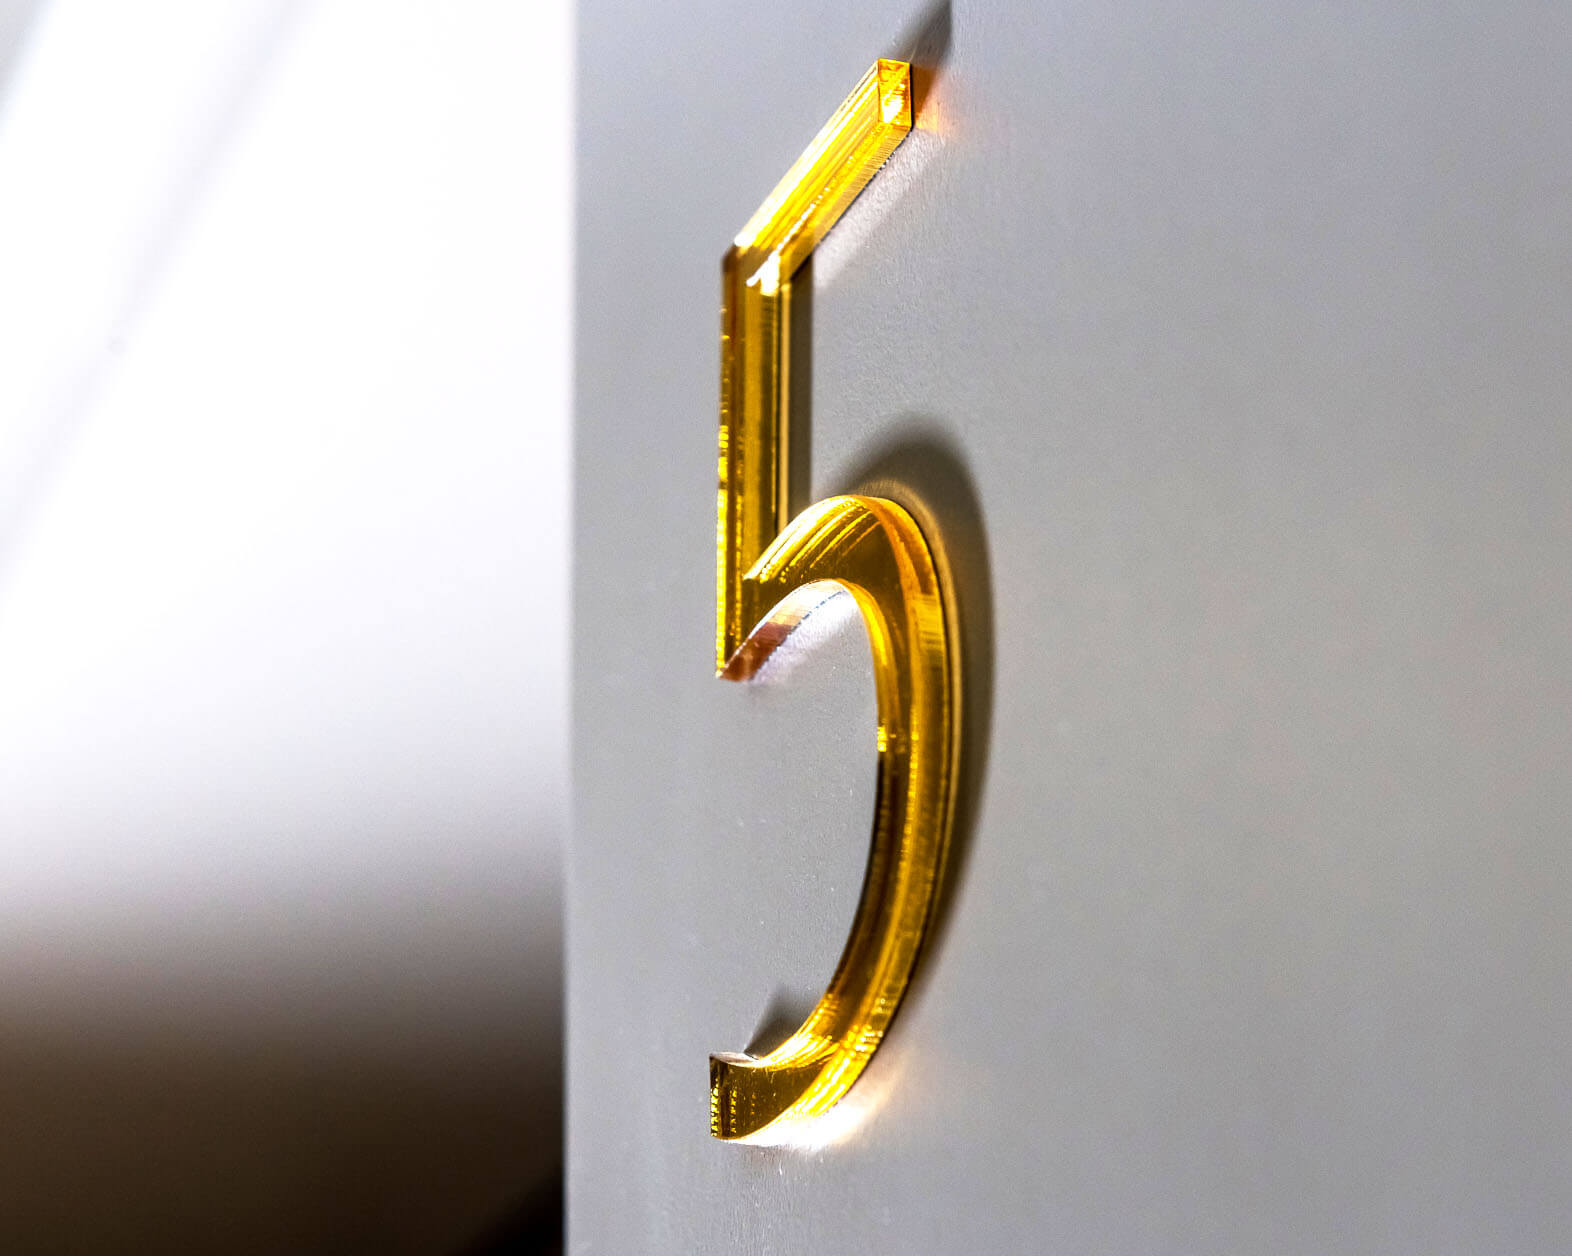 Numeri da 5 porte - 5;marcatura dell'edificio - marcatura - dentro - marcatura - stanze - numeri